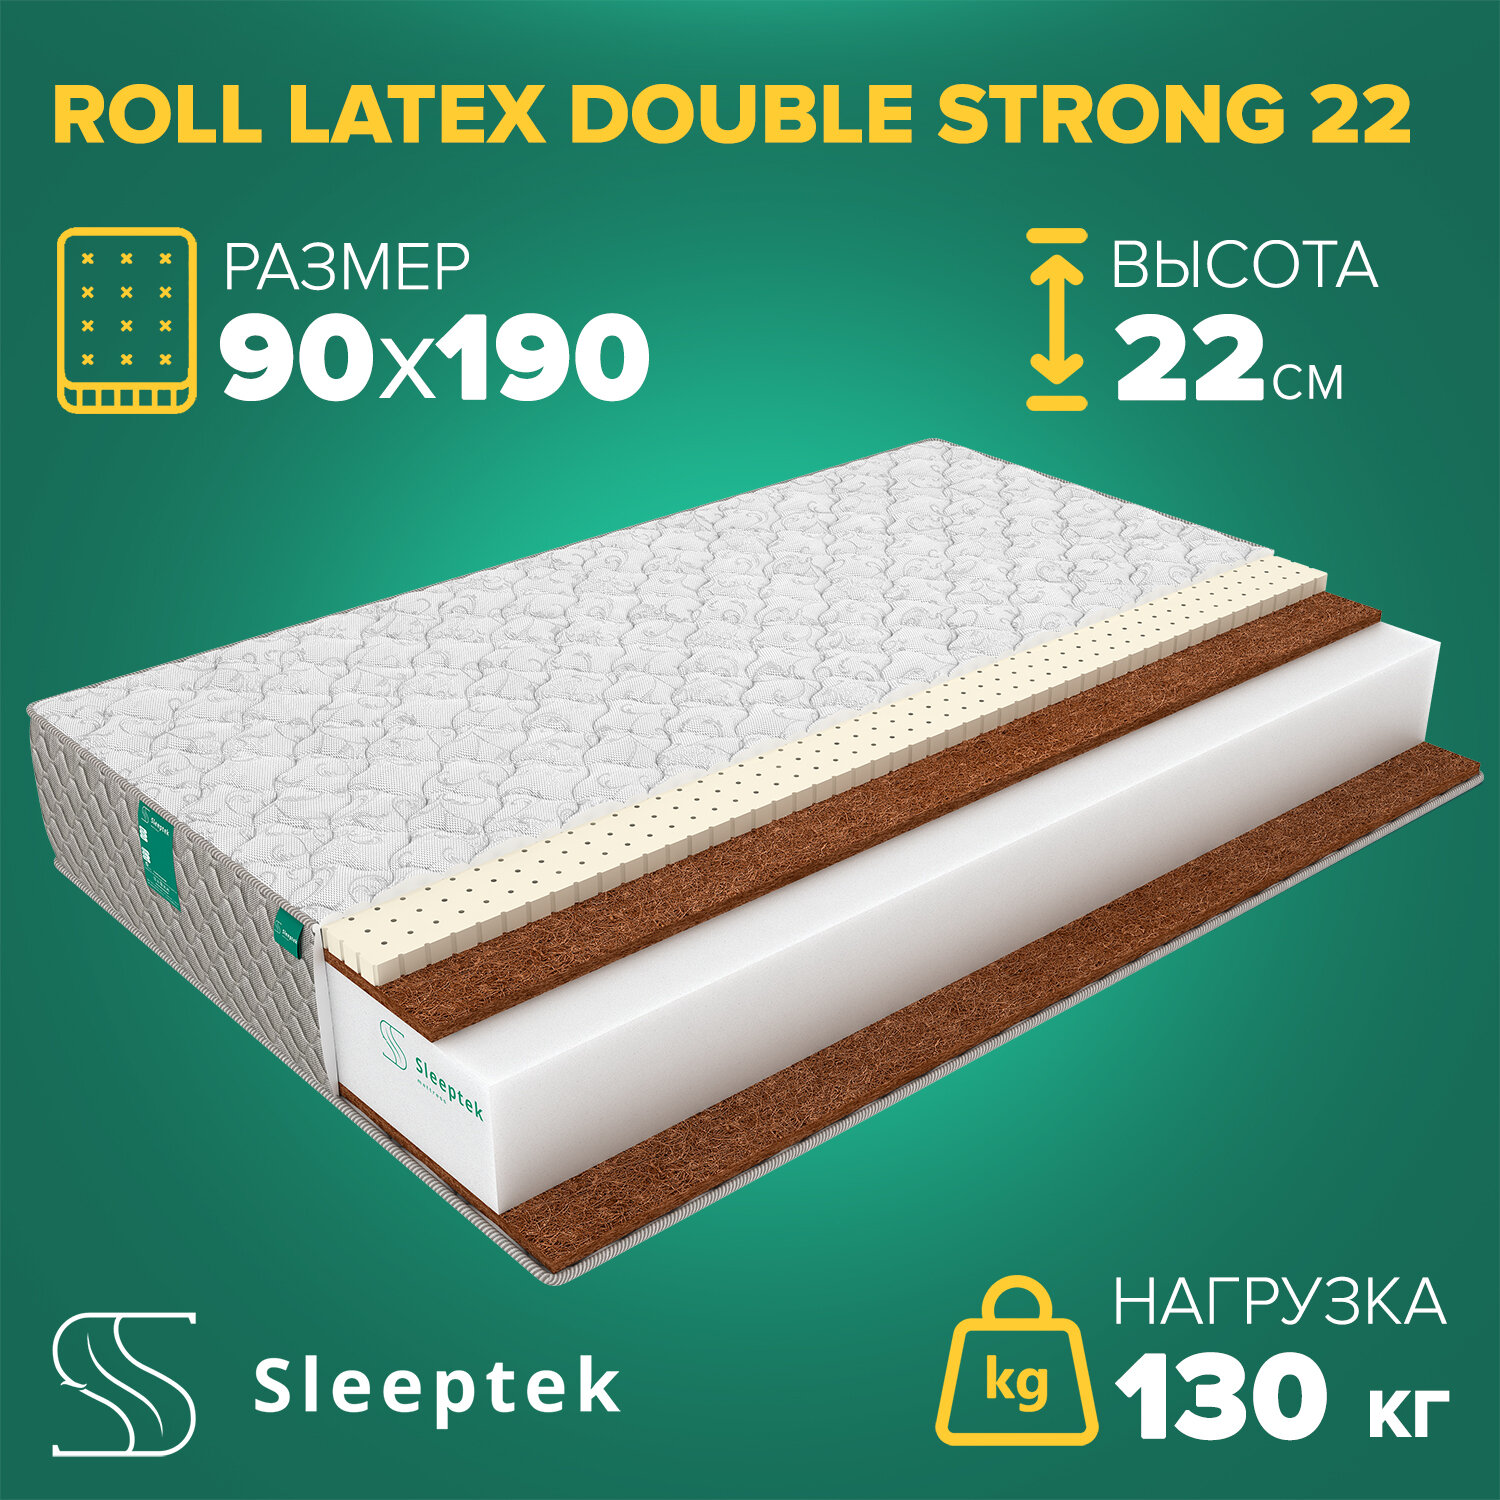 Матрас Sleeptek Roll Latex DoubleStrong 22 90х190